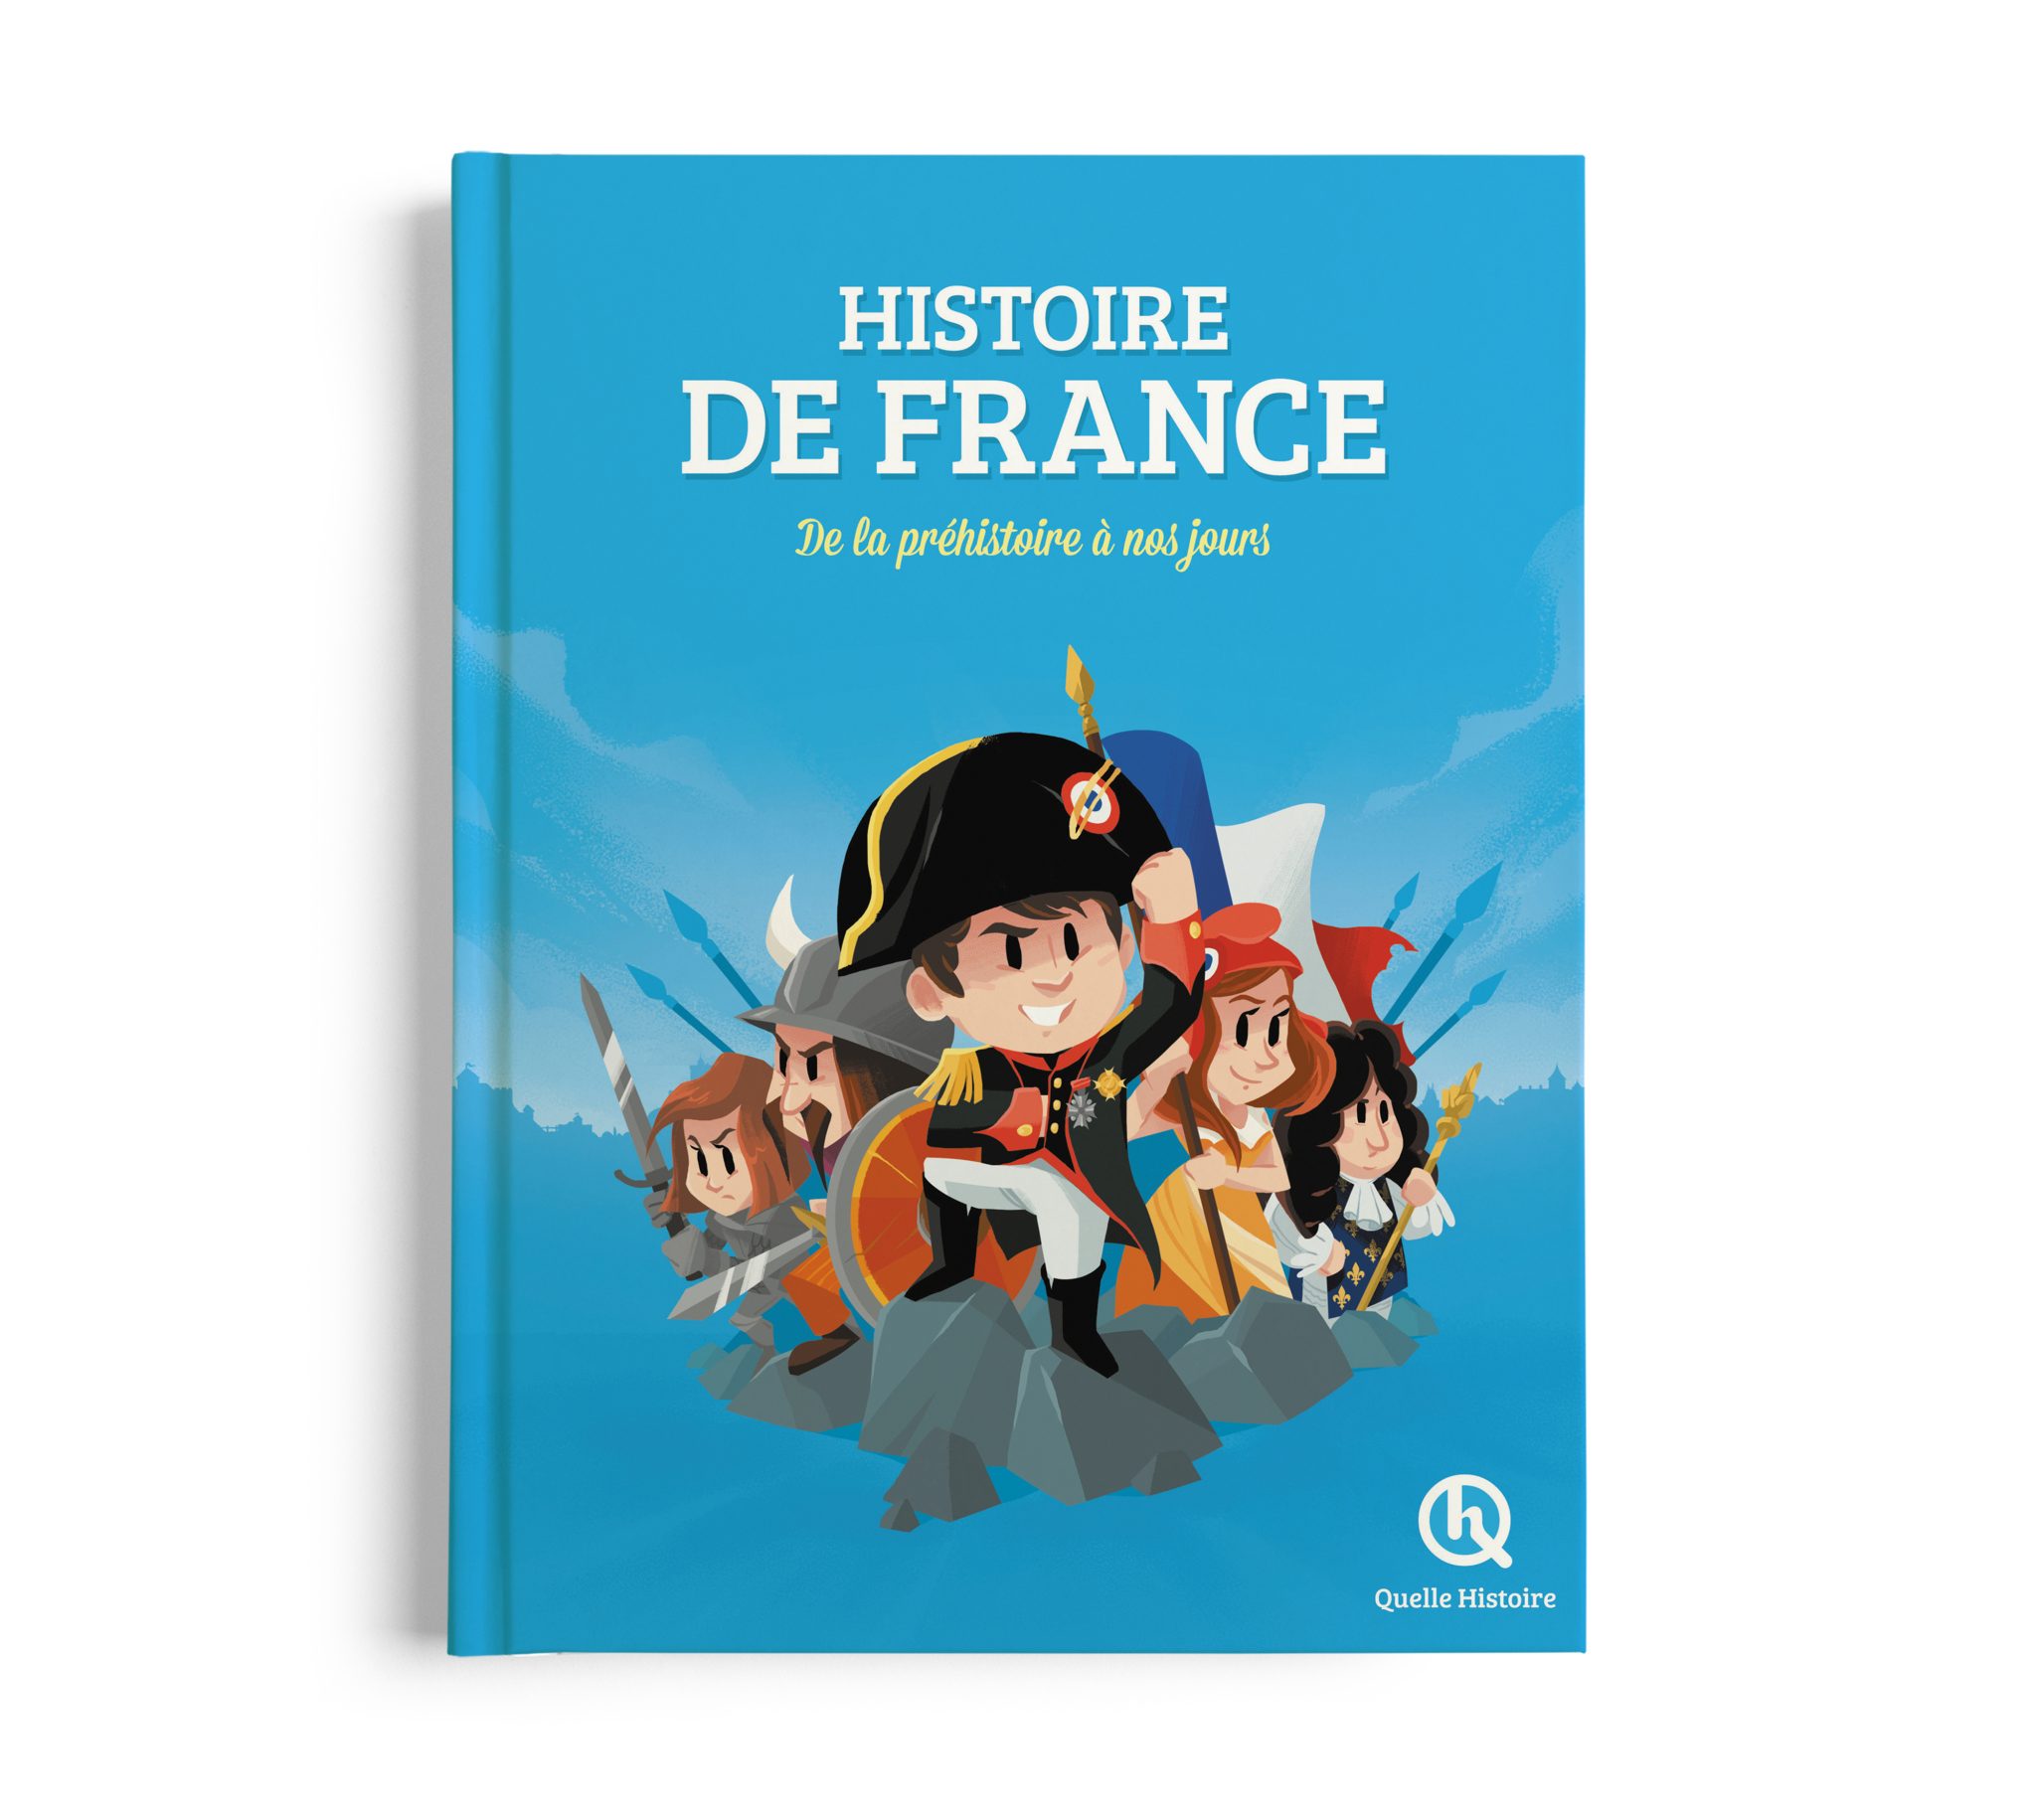 Quel est le poids d' dans le livre en France?